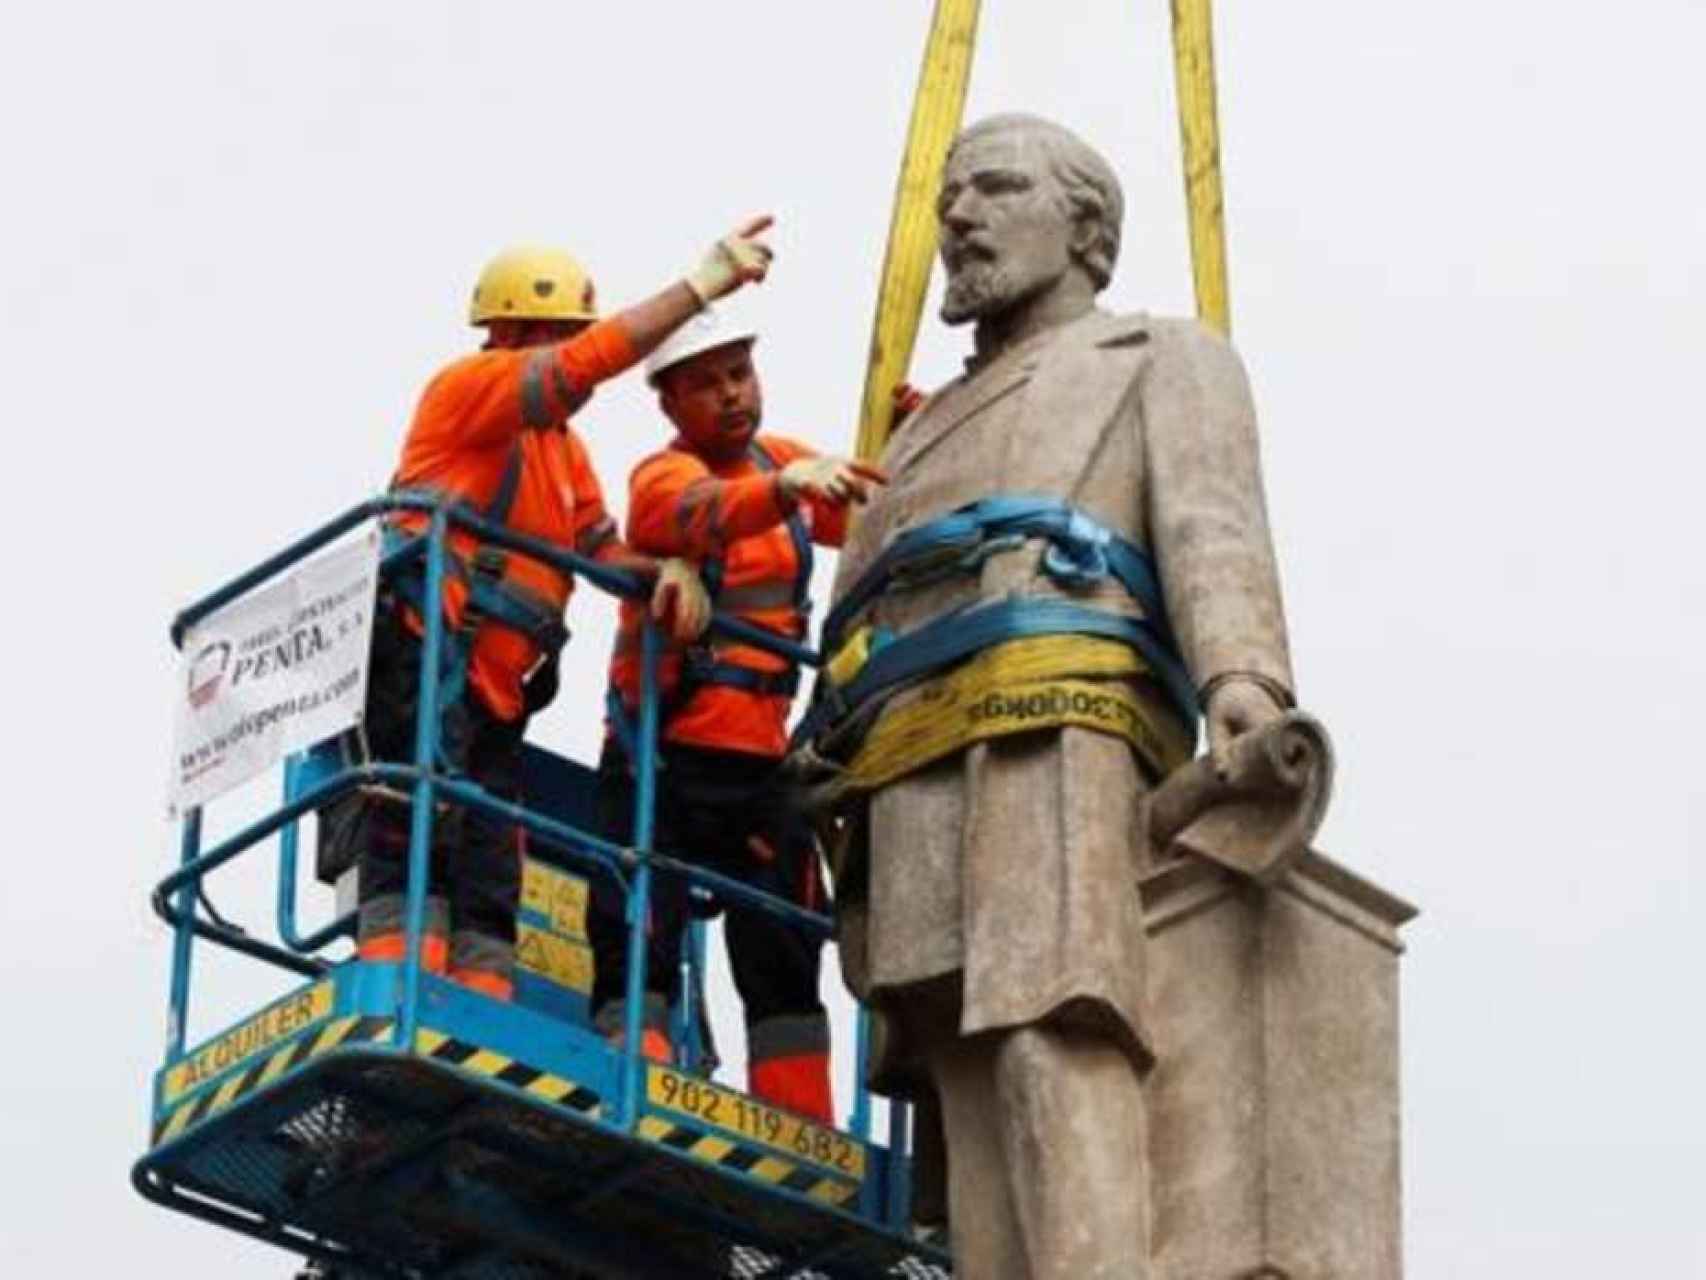 Los operarios del ayuntamiento retiran la estatua del Marqués de Comillas de su pedestal.